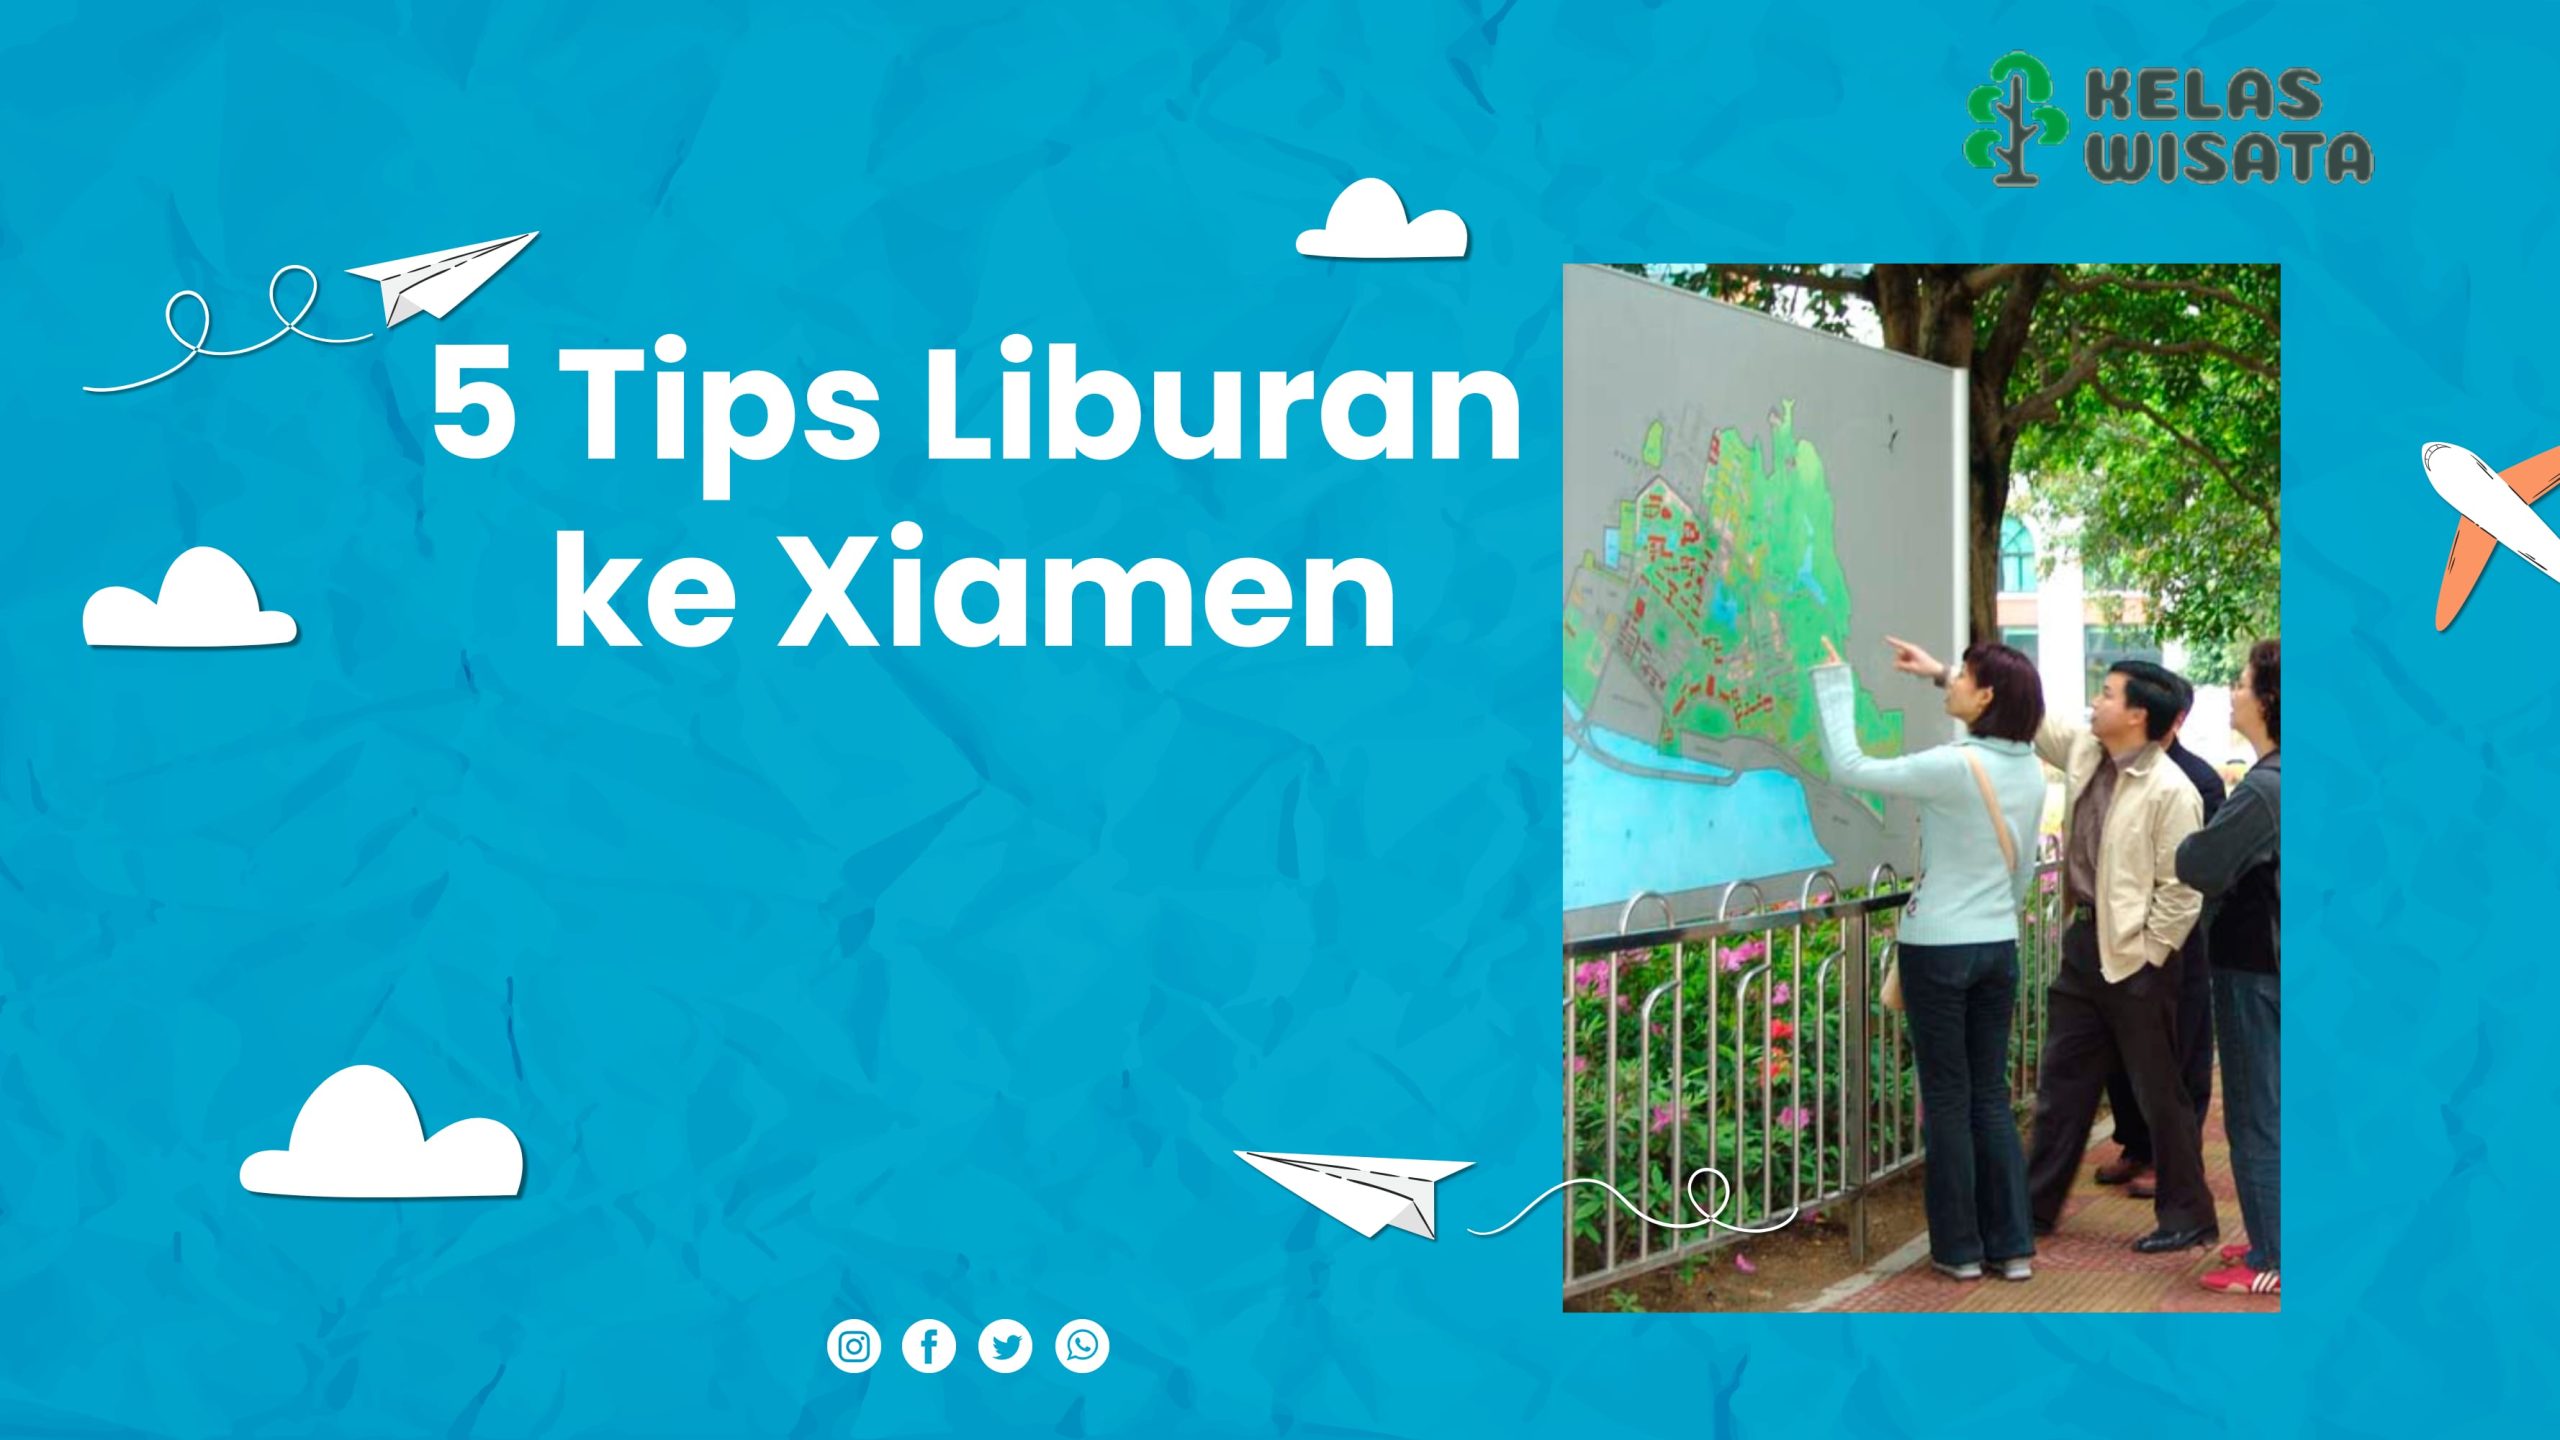 5 Tips Liburan ke Xiamen, Kunjungi Tempat Wisata Ini!